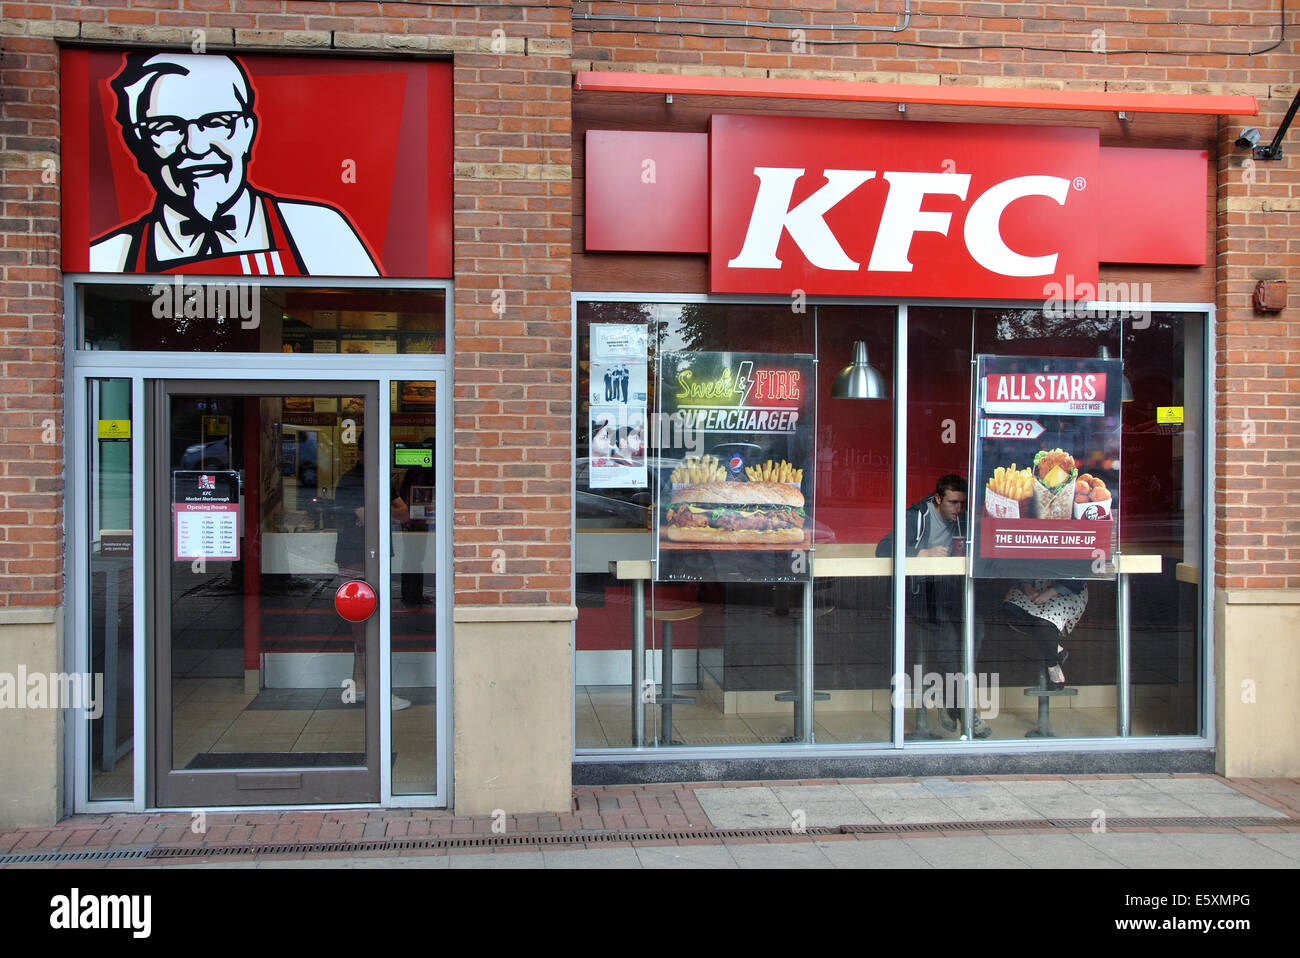 KFC, Market Harborough, Leicestershire, England, UK Stock Photo